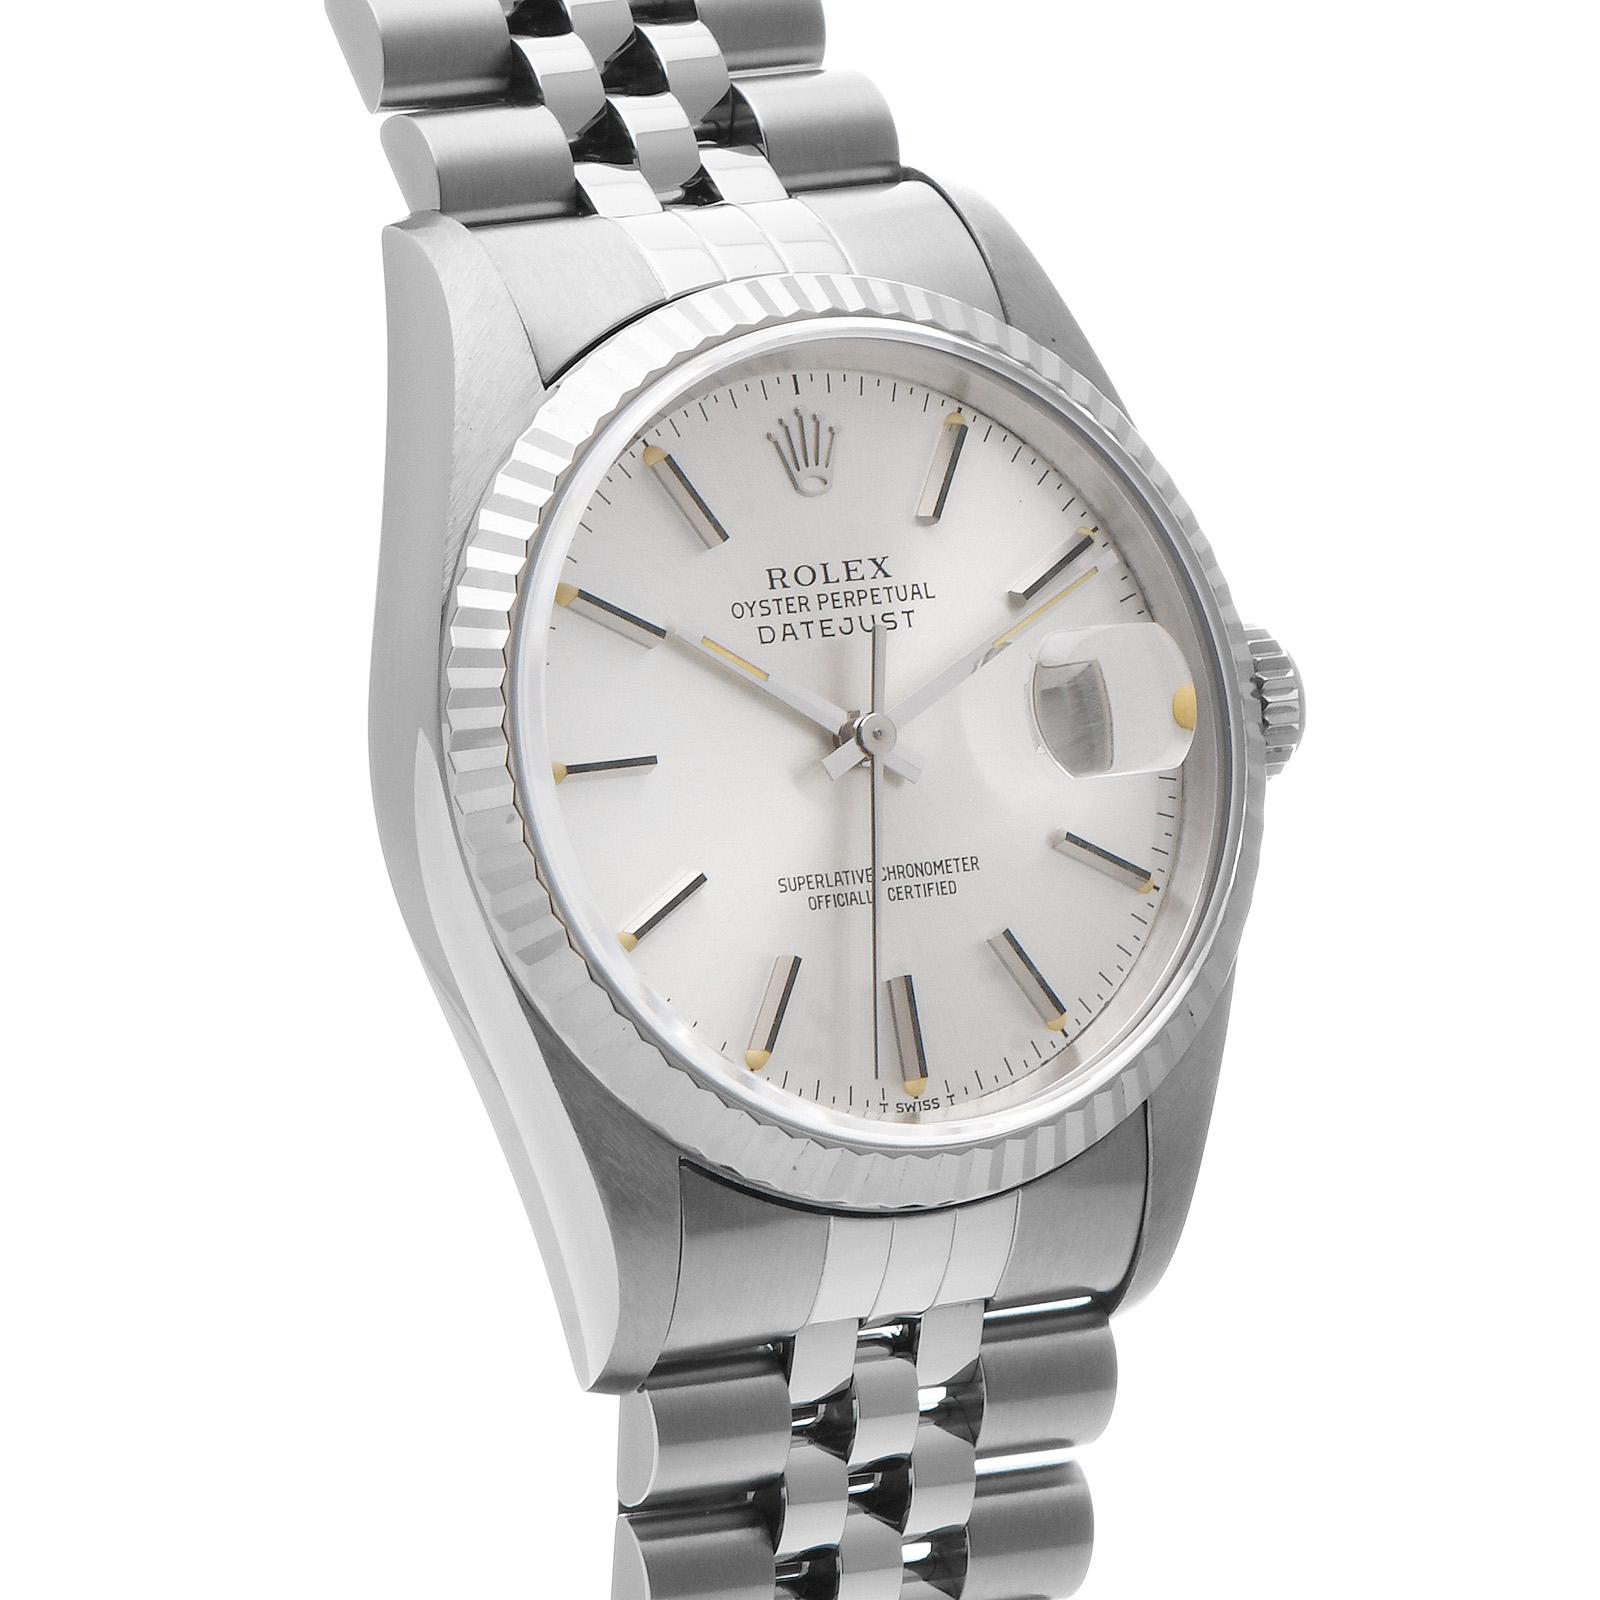 ロレックス ROLEX 16234 S番(1994年頃製造) シルバー メンズ 腕時計